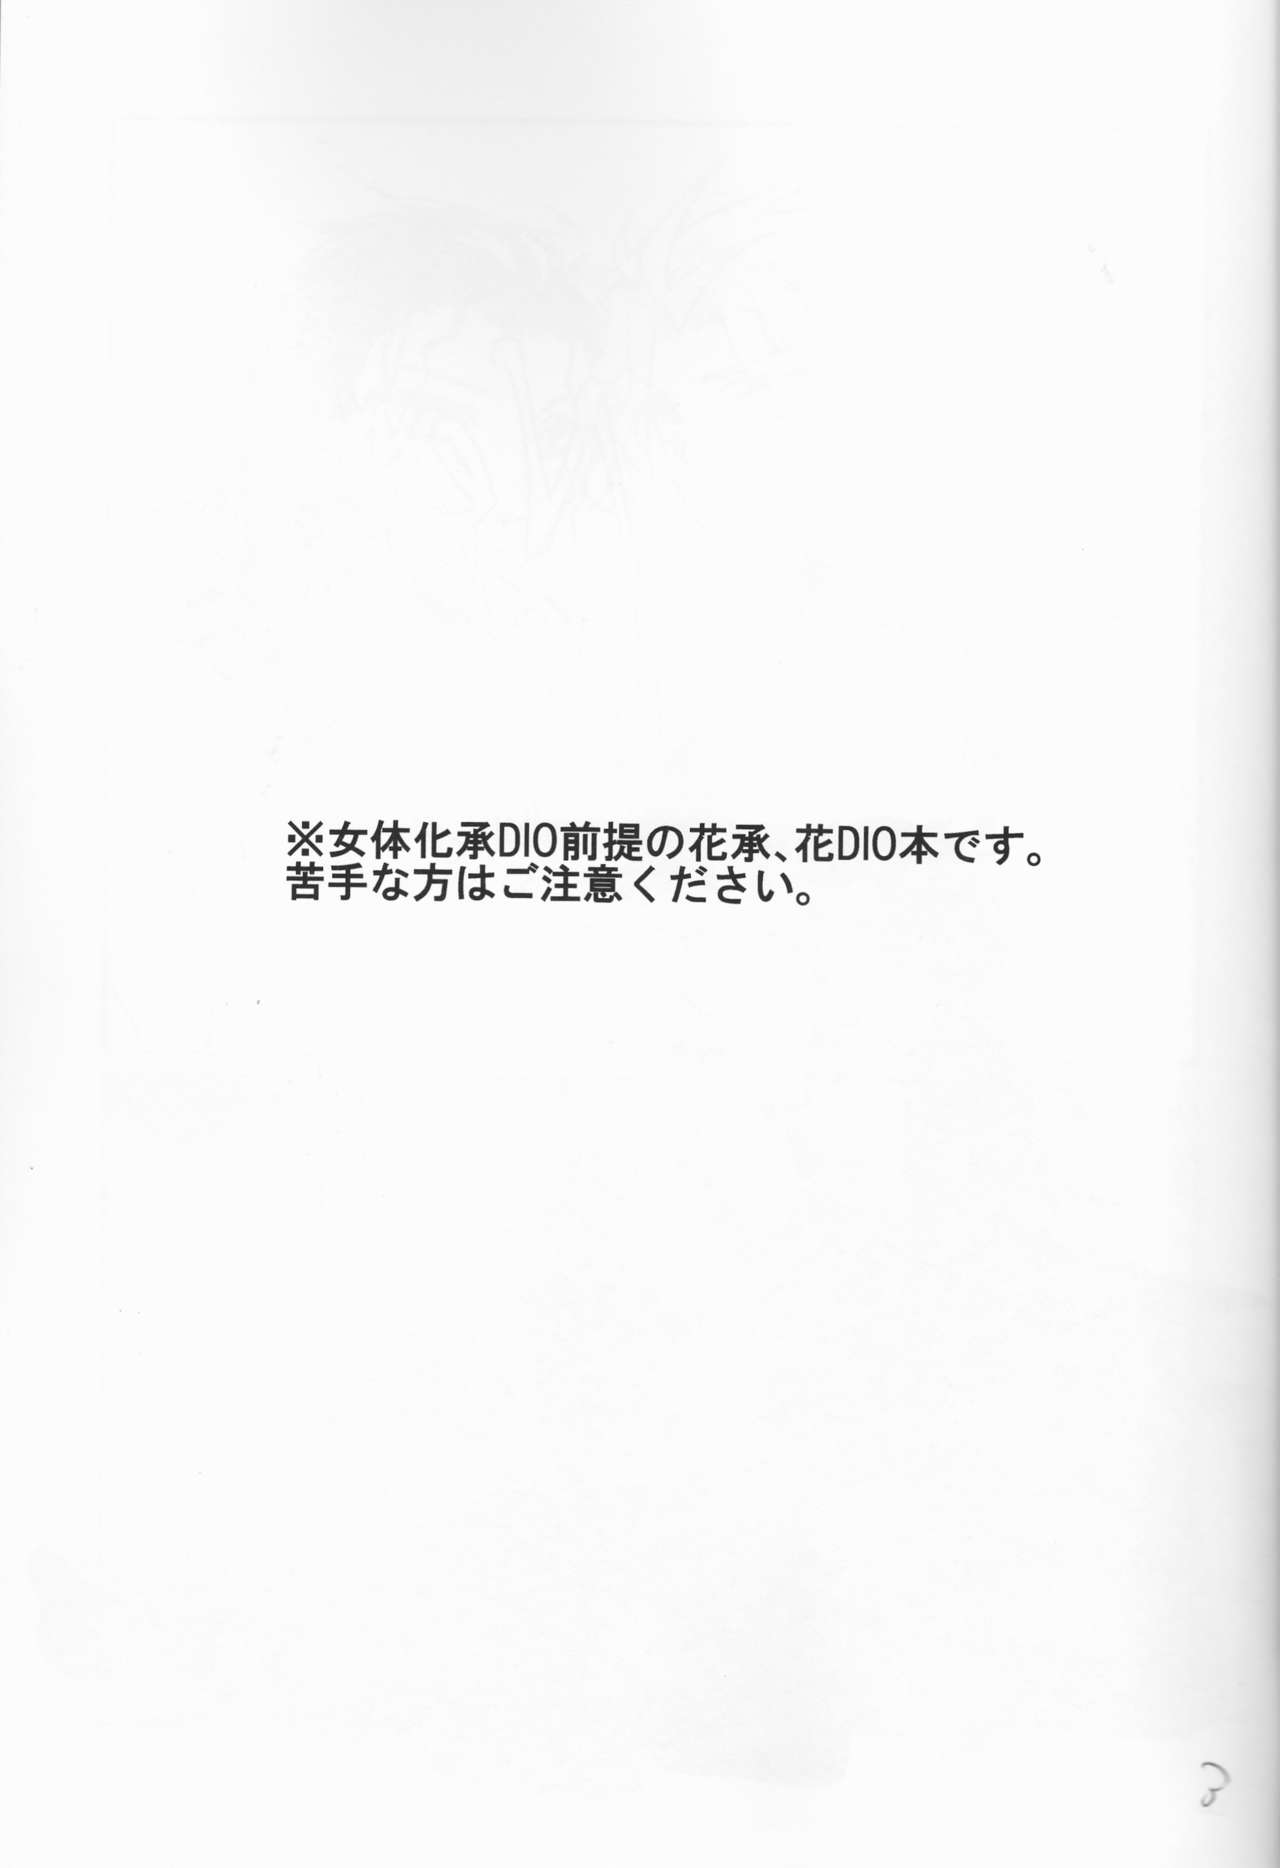 (ザ・ワールド4) [Voice of flower (Shiori)] New relations (ジョジョの奇妙な冒険) [ページ欠落]